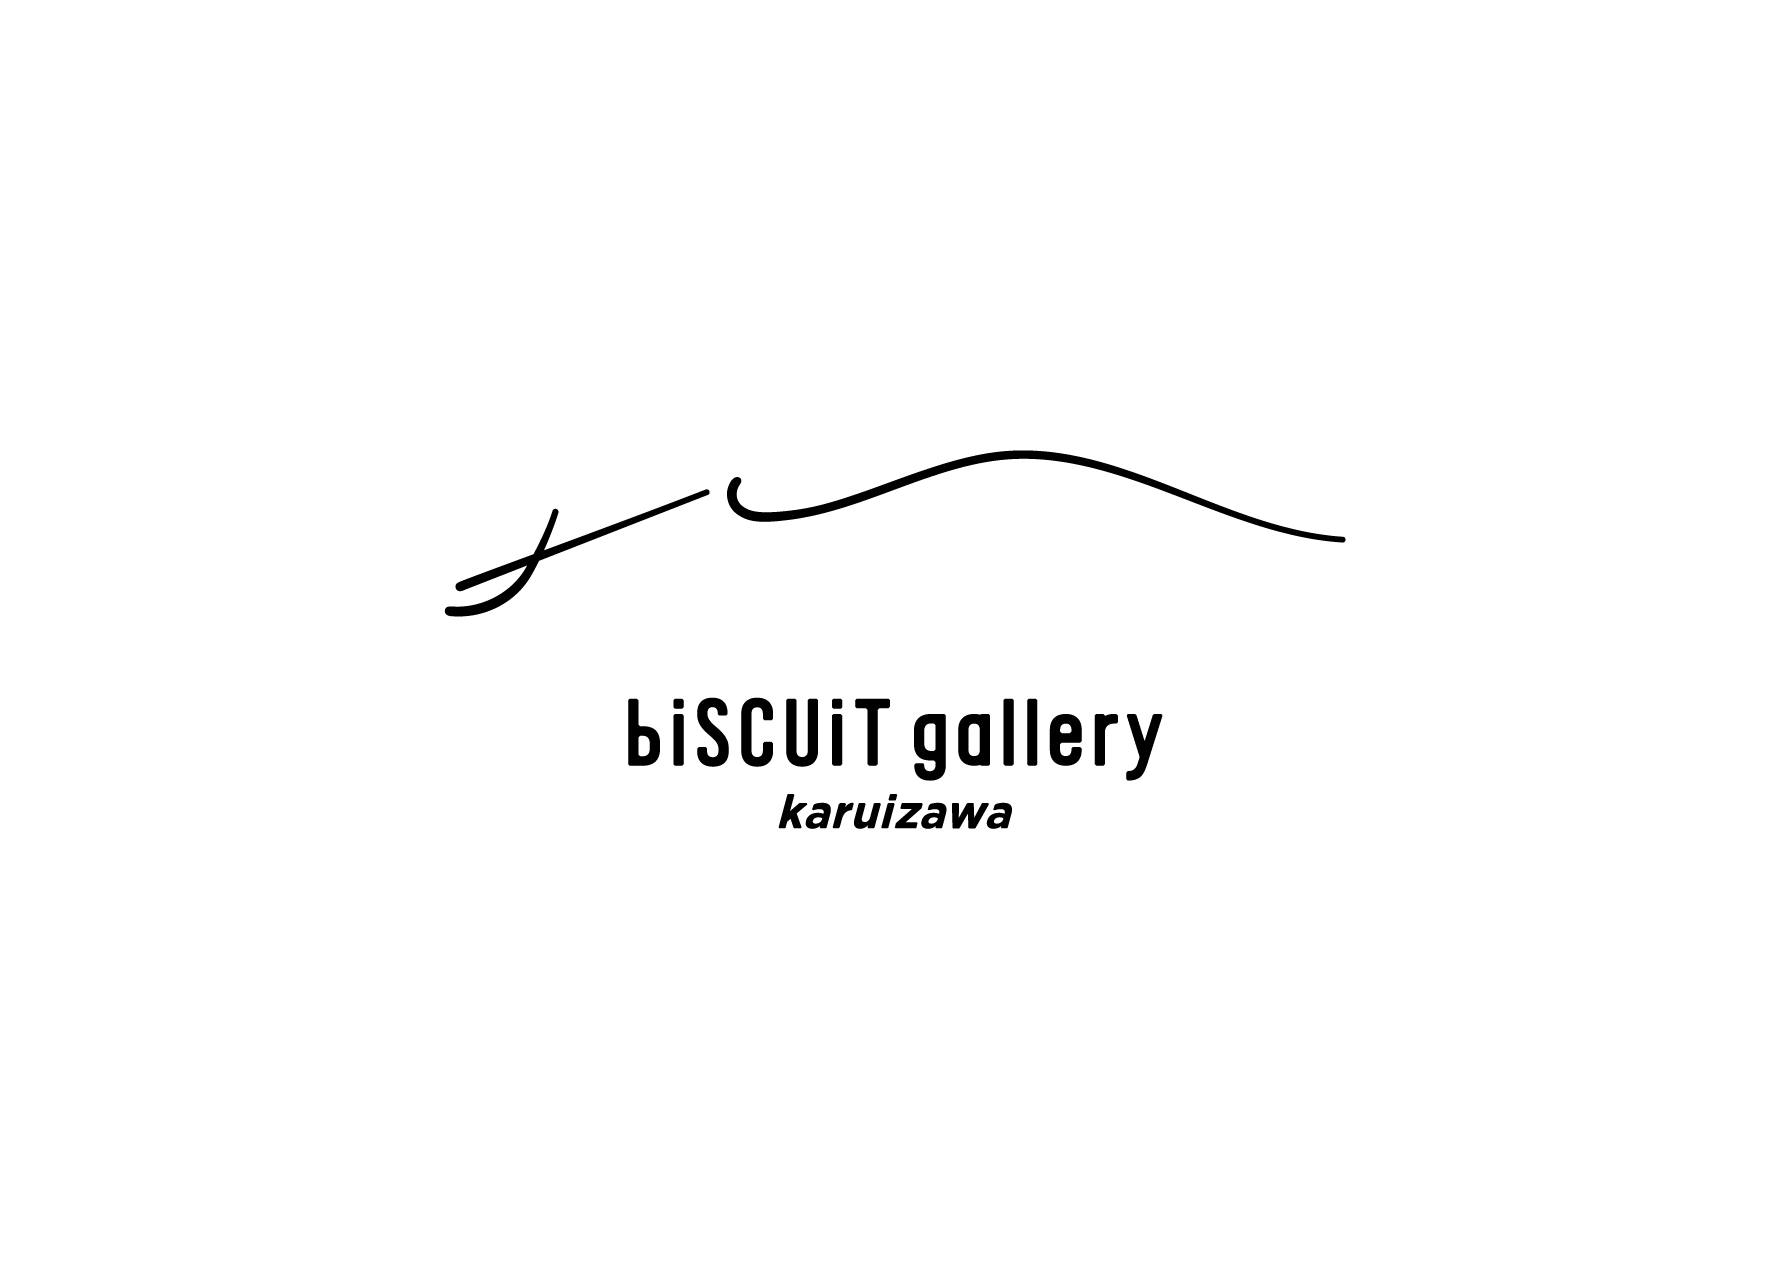 【軽井沢新ギャラリー】biscuit gallery、2店舗目のギャラリー スペース出店のお知らせ